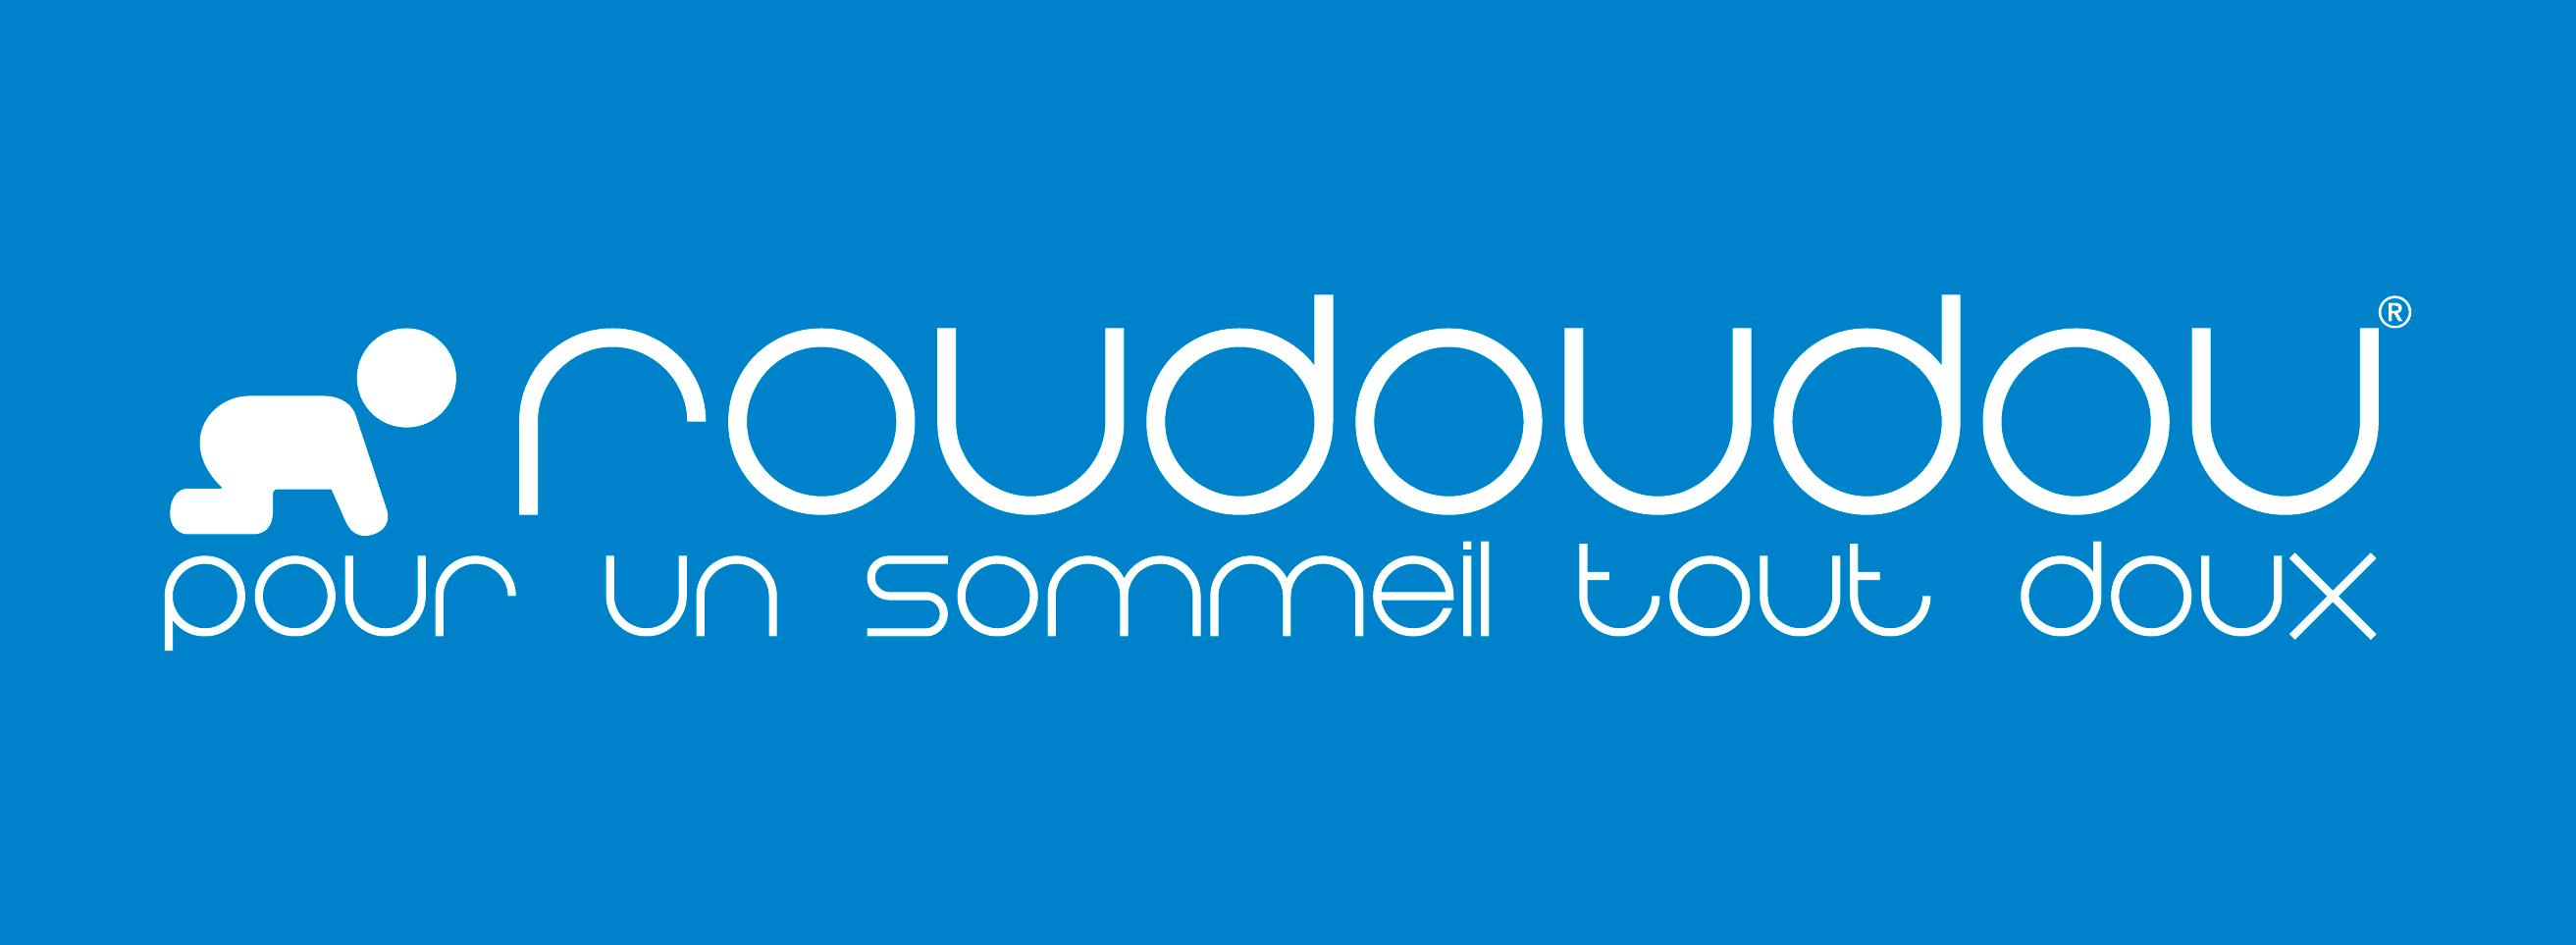 Roudoudou Cofreet entretien textile etiquette